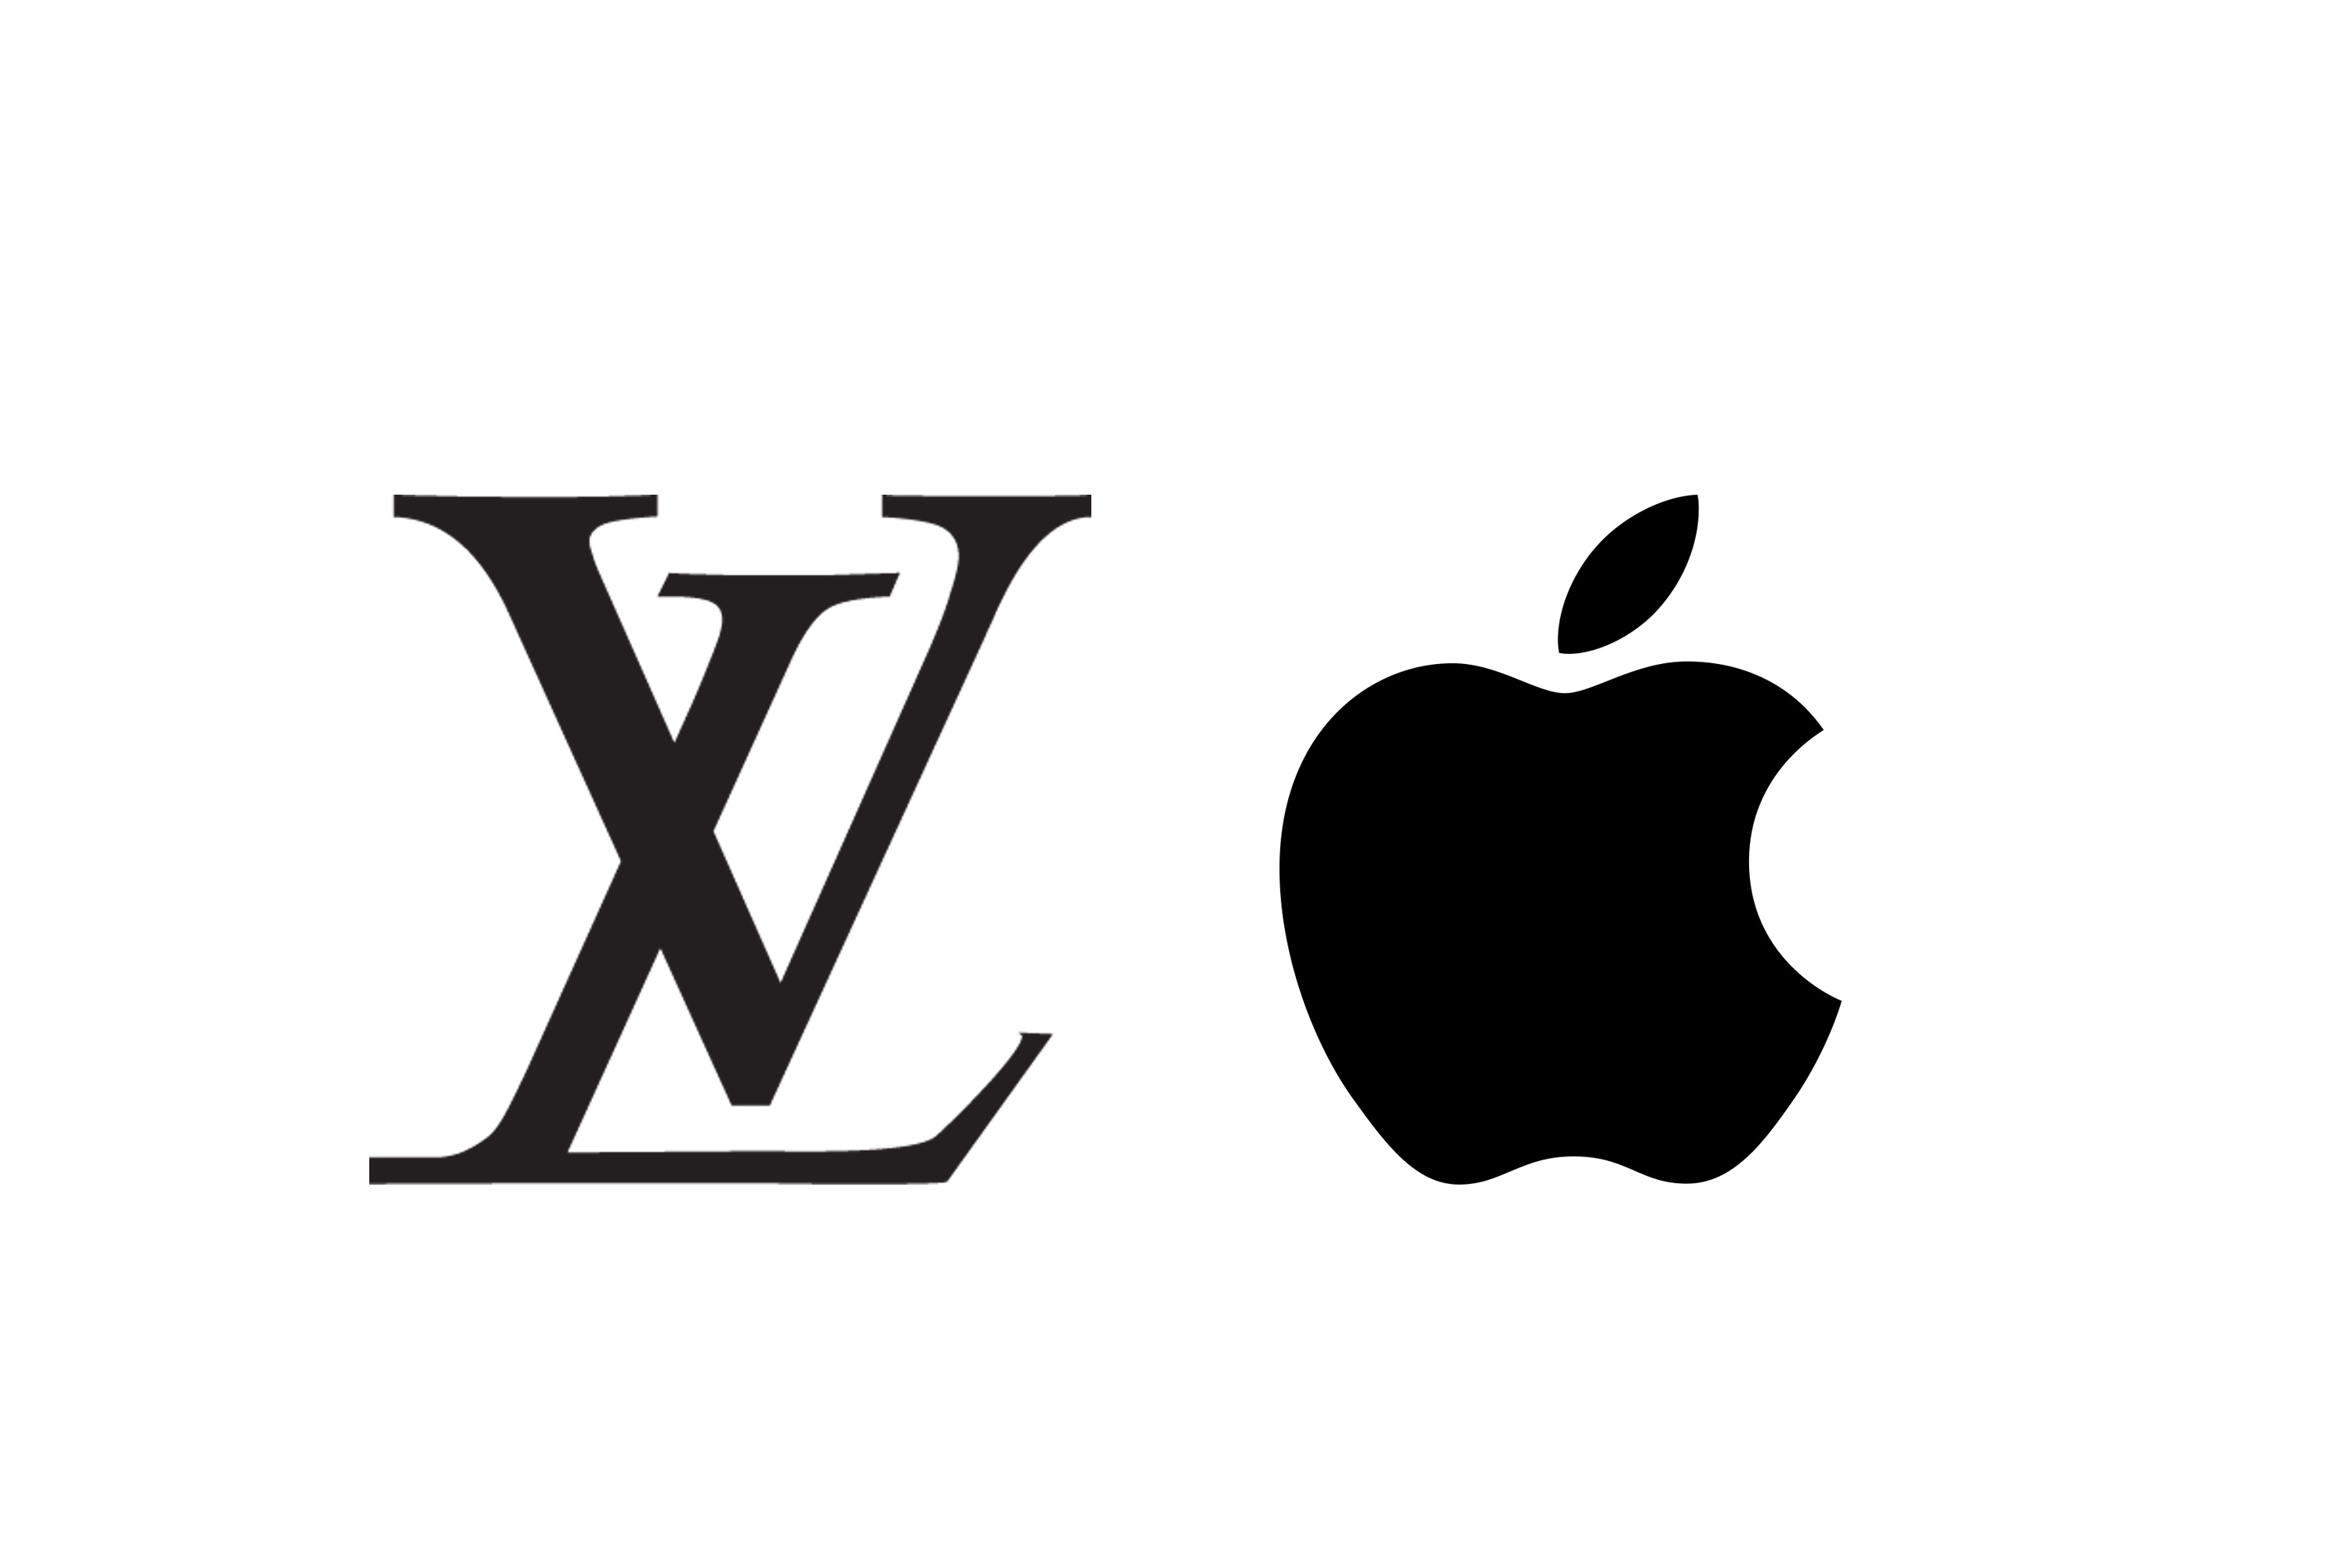 Louis Vuitton Apple collaboration